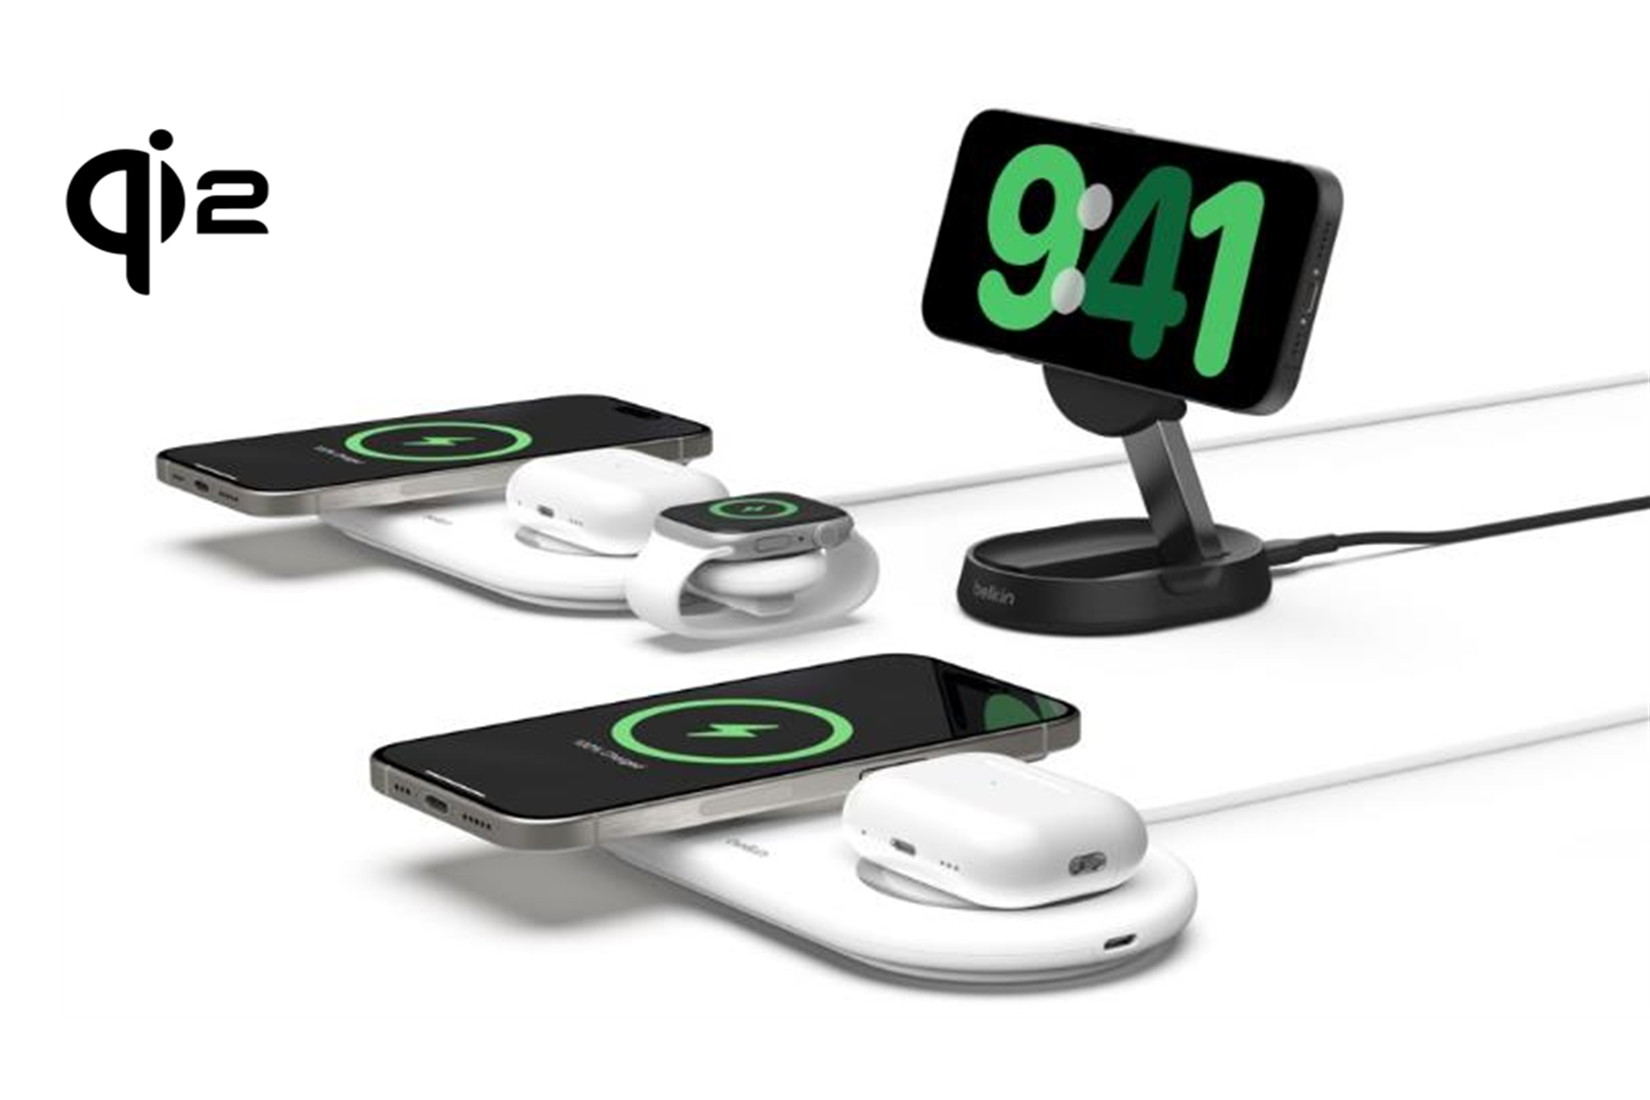 次世代ワイヤレス充電「Qi2」対応製品が登場 ベルキン - Impress Watch